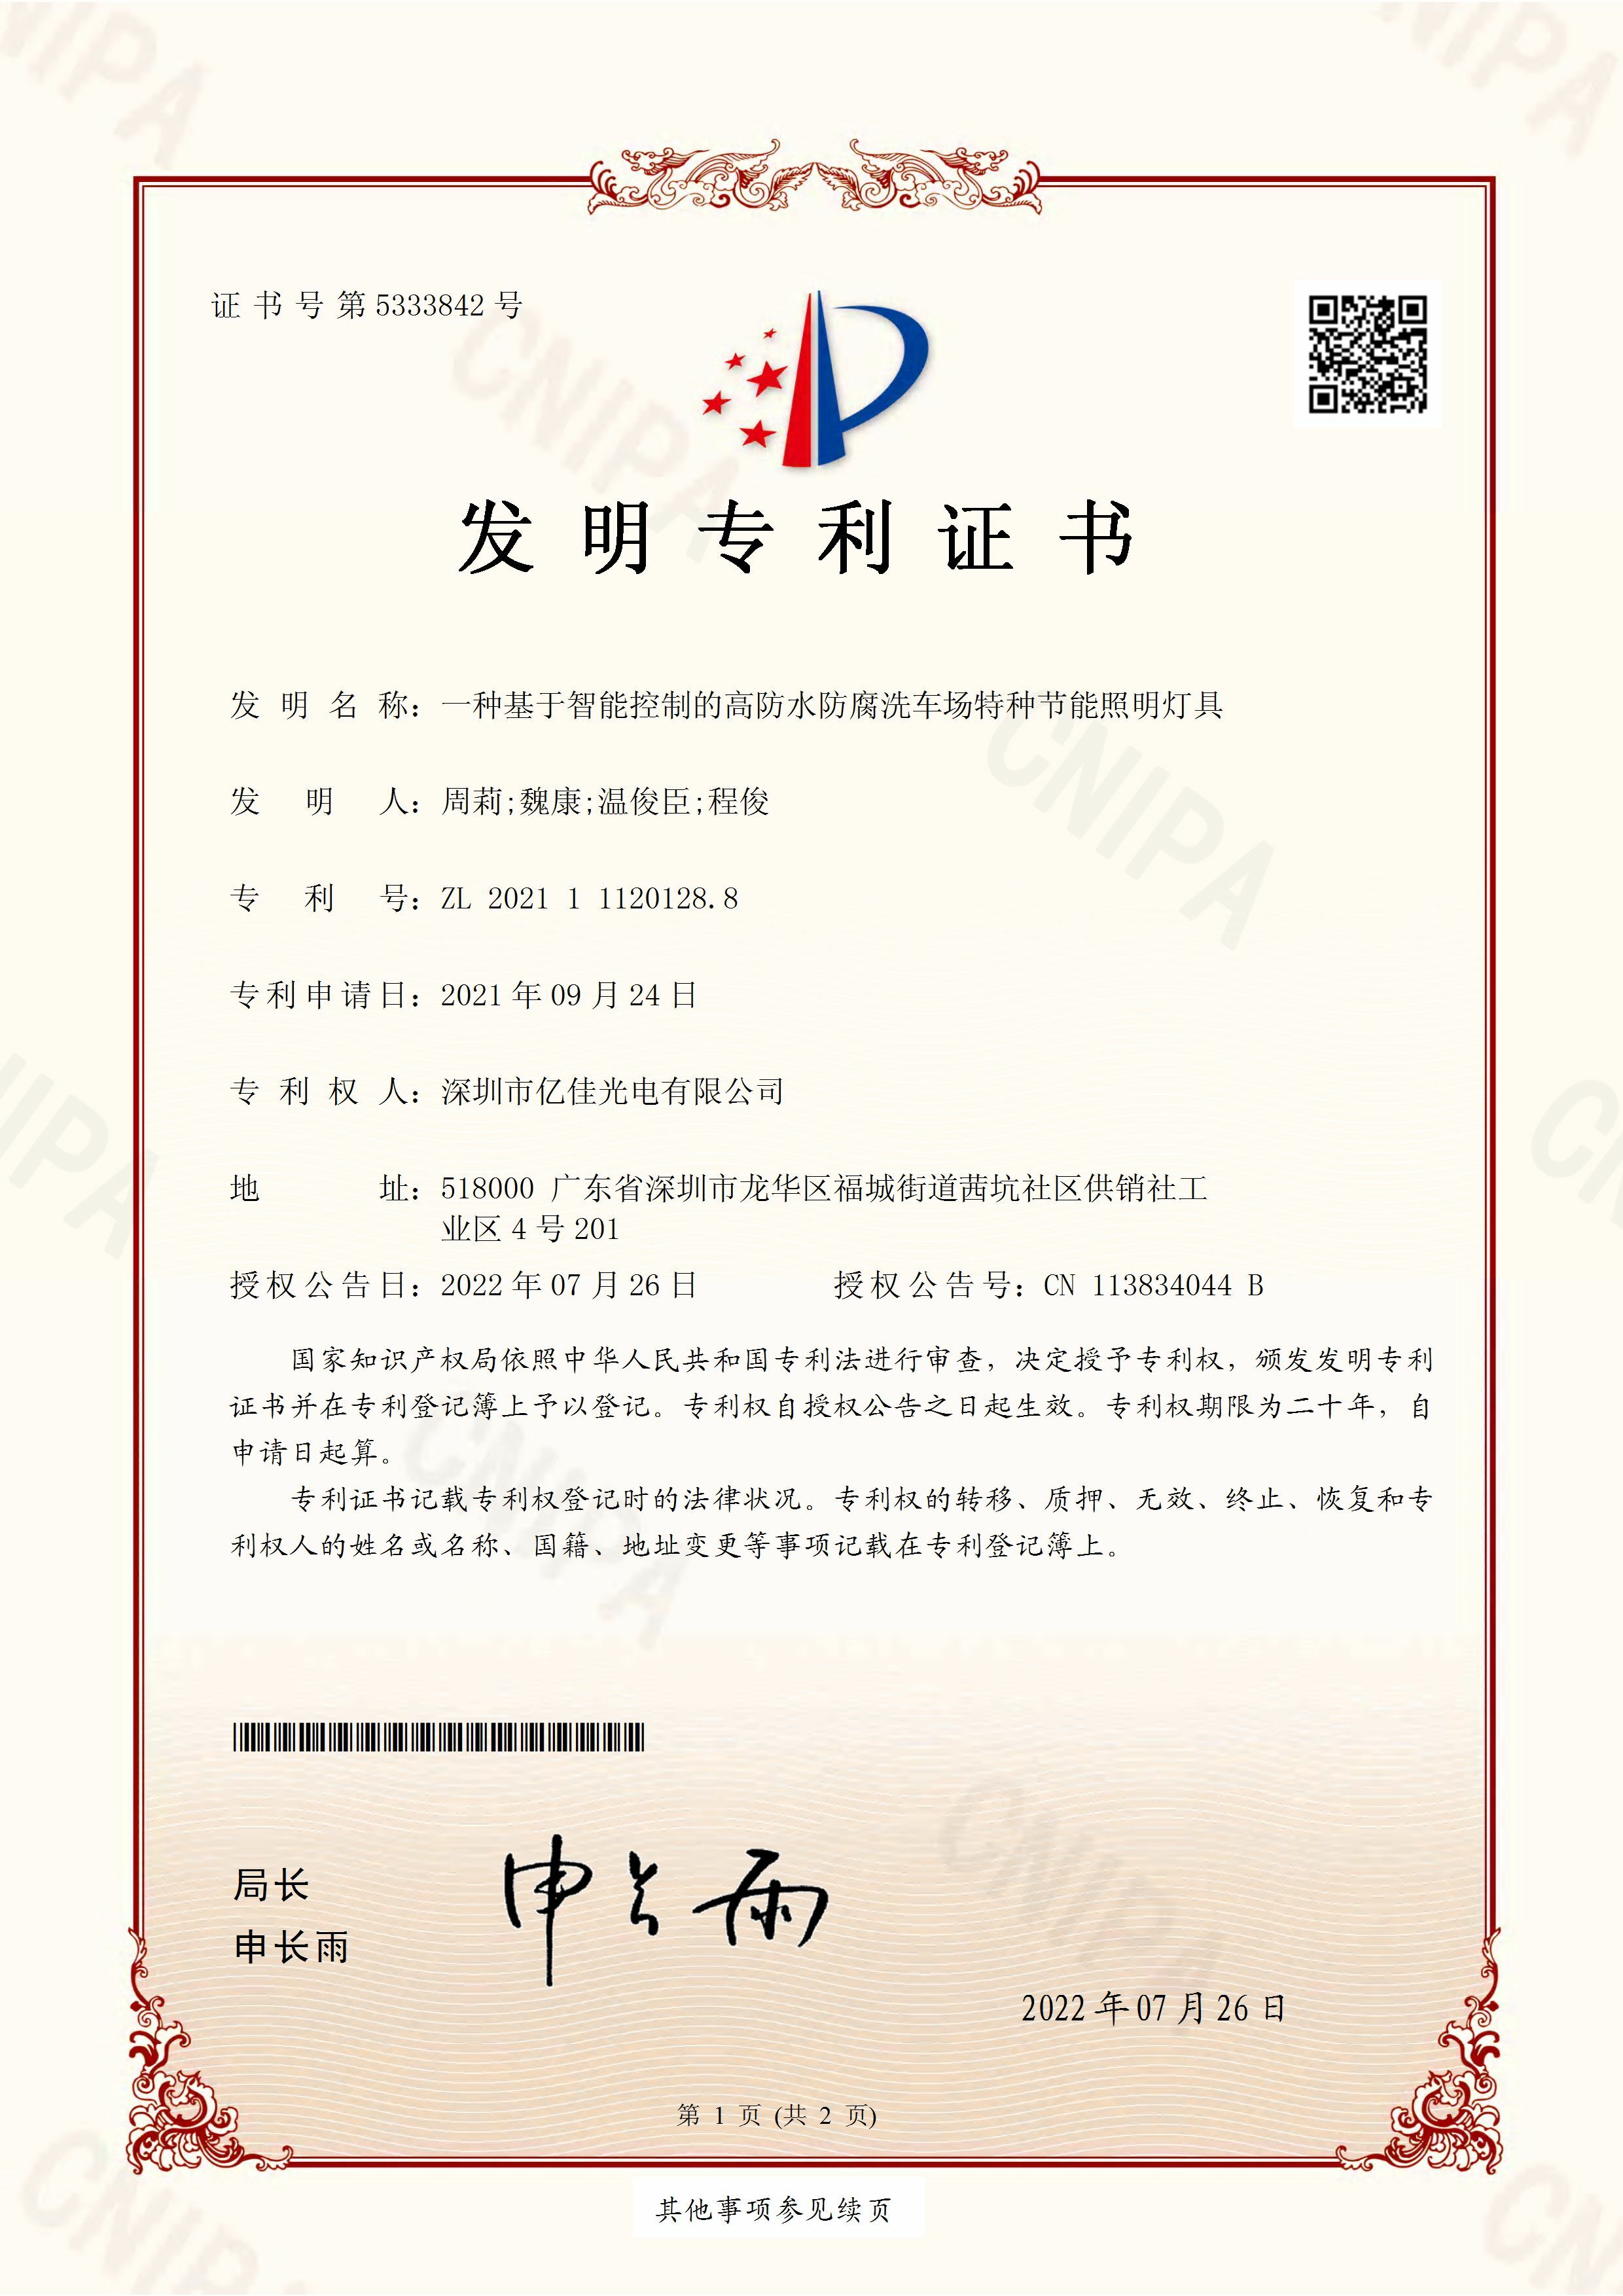 深圳市海博论坛光电有限公司洗车场节能照明灯发明专利申请获得通过